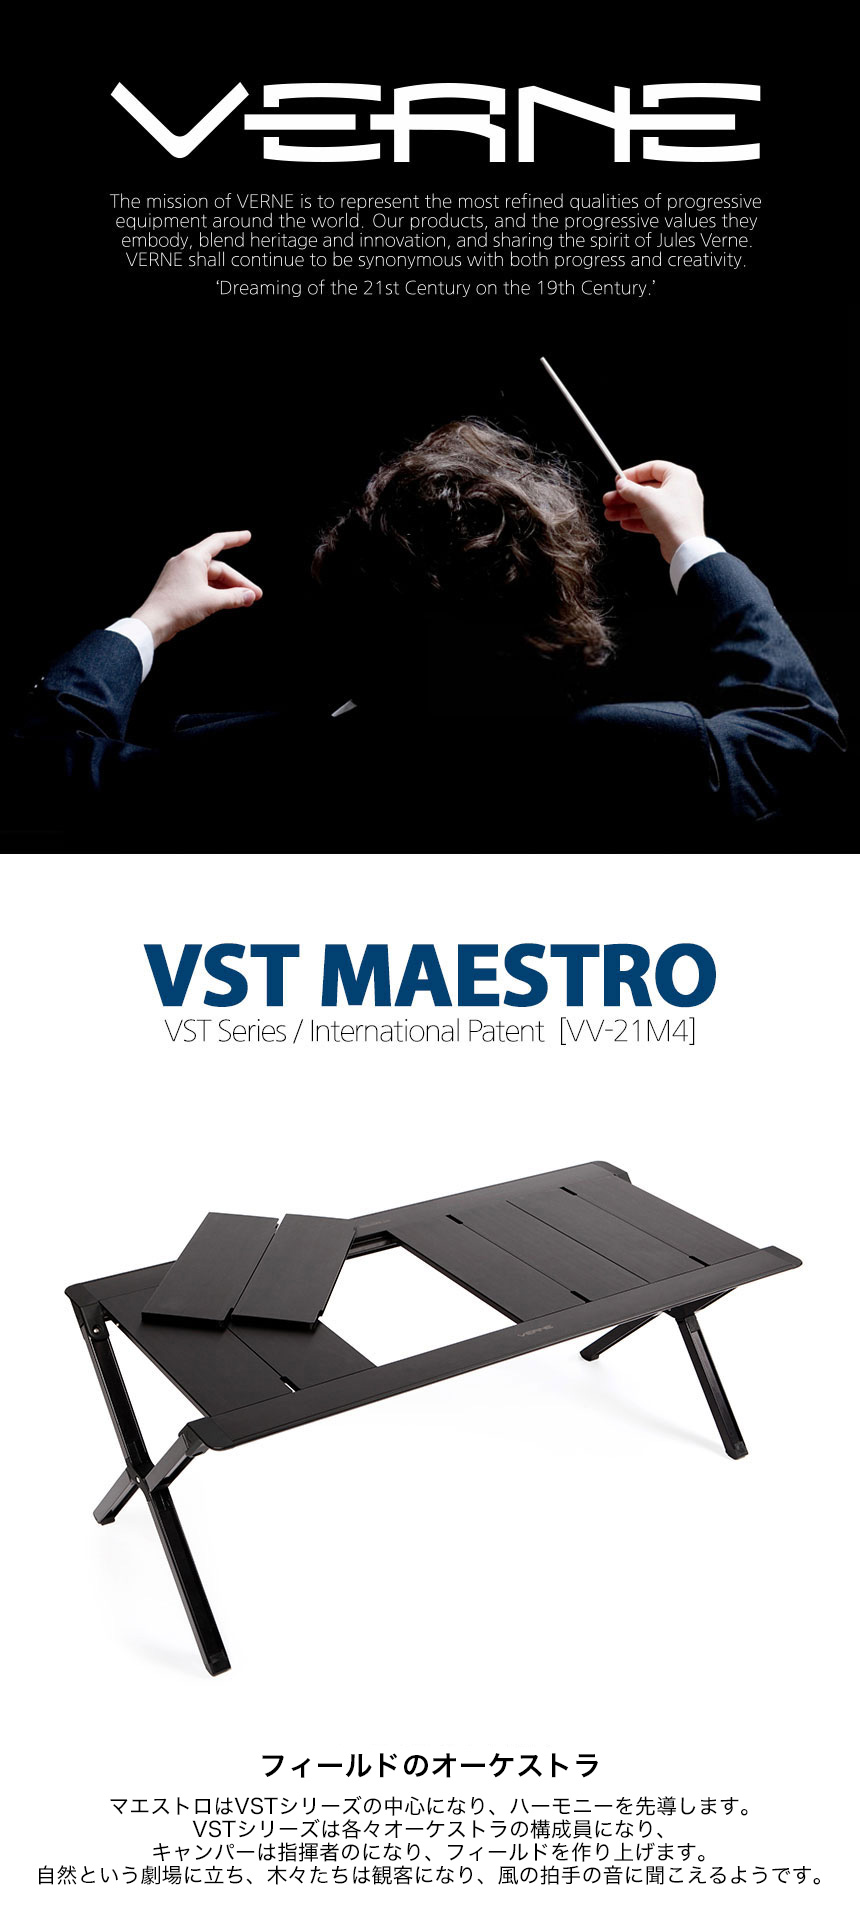 VERNE ベルン VST MAESTRO SYSTEM TABLE マエストロ テーブル | アウトドア・キャンプ| バッグ・アウトドア